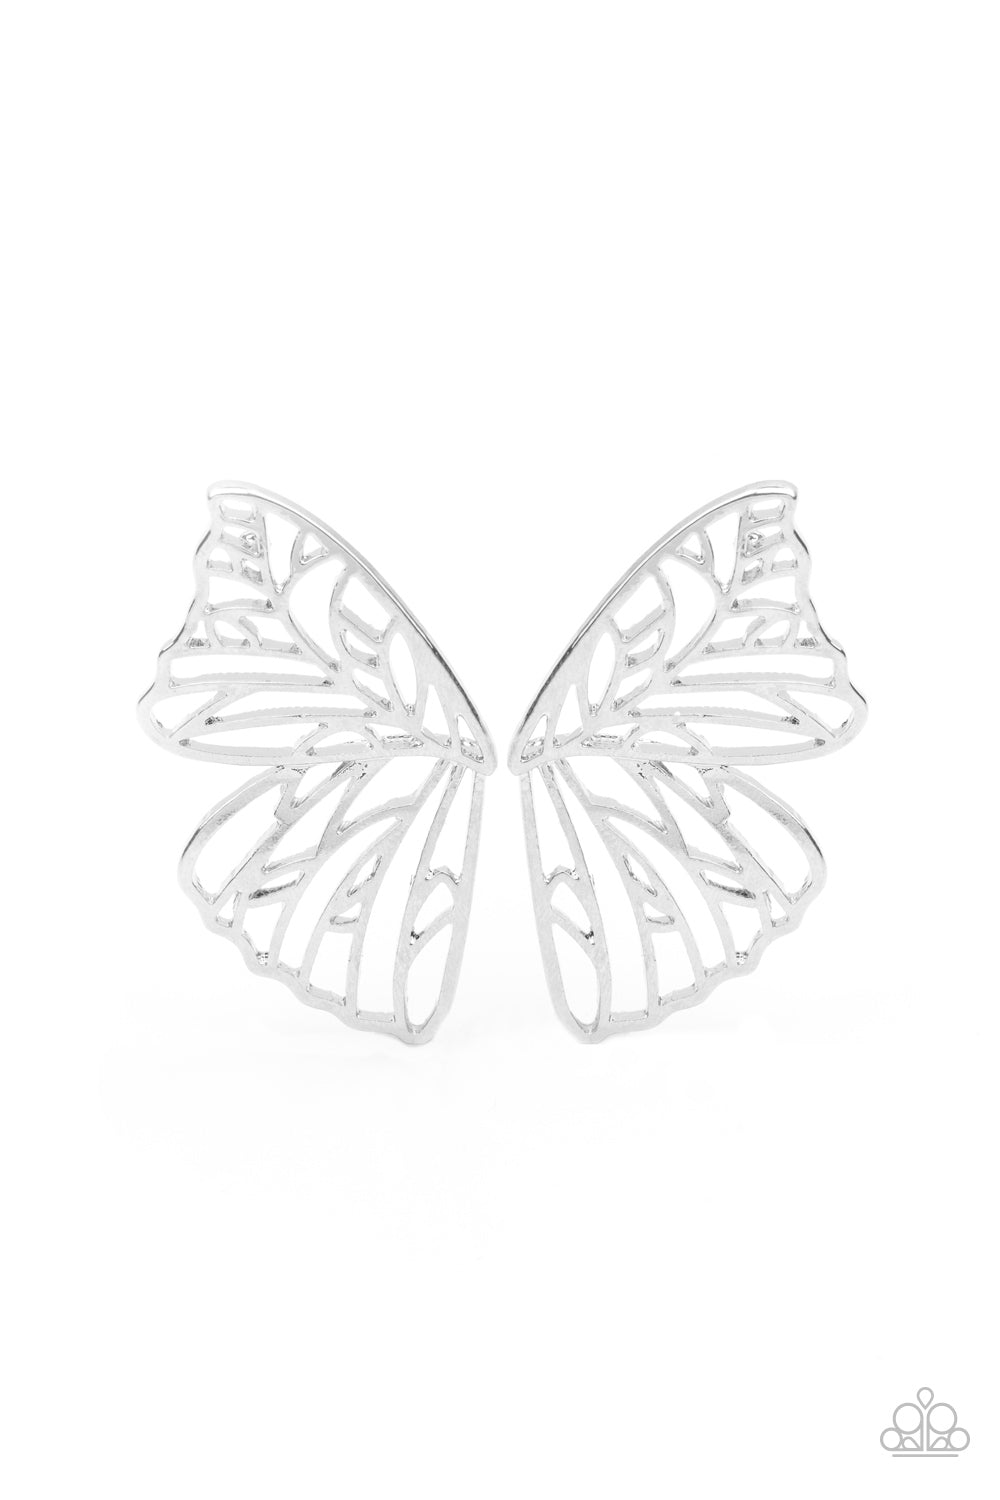 Butterfly Frills - Silver Earrings - Paparazzi Accessories - Paparazzi Accessories 